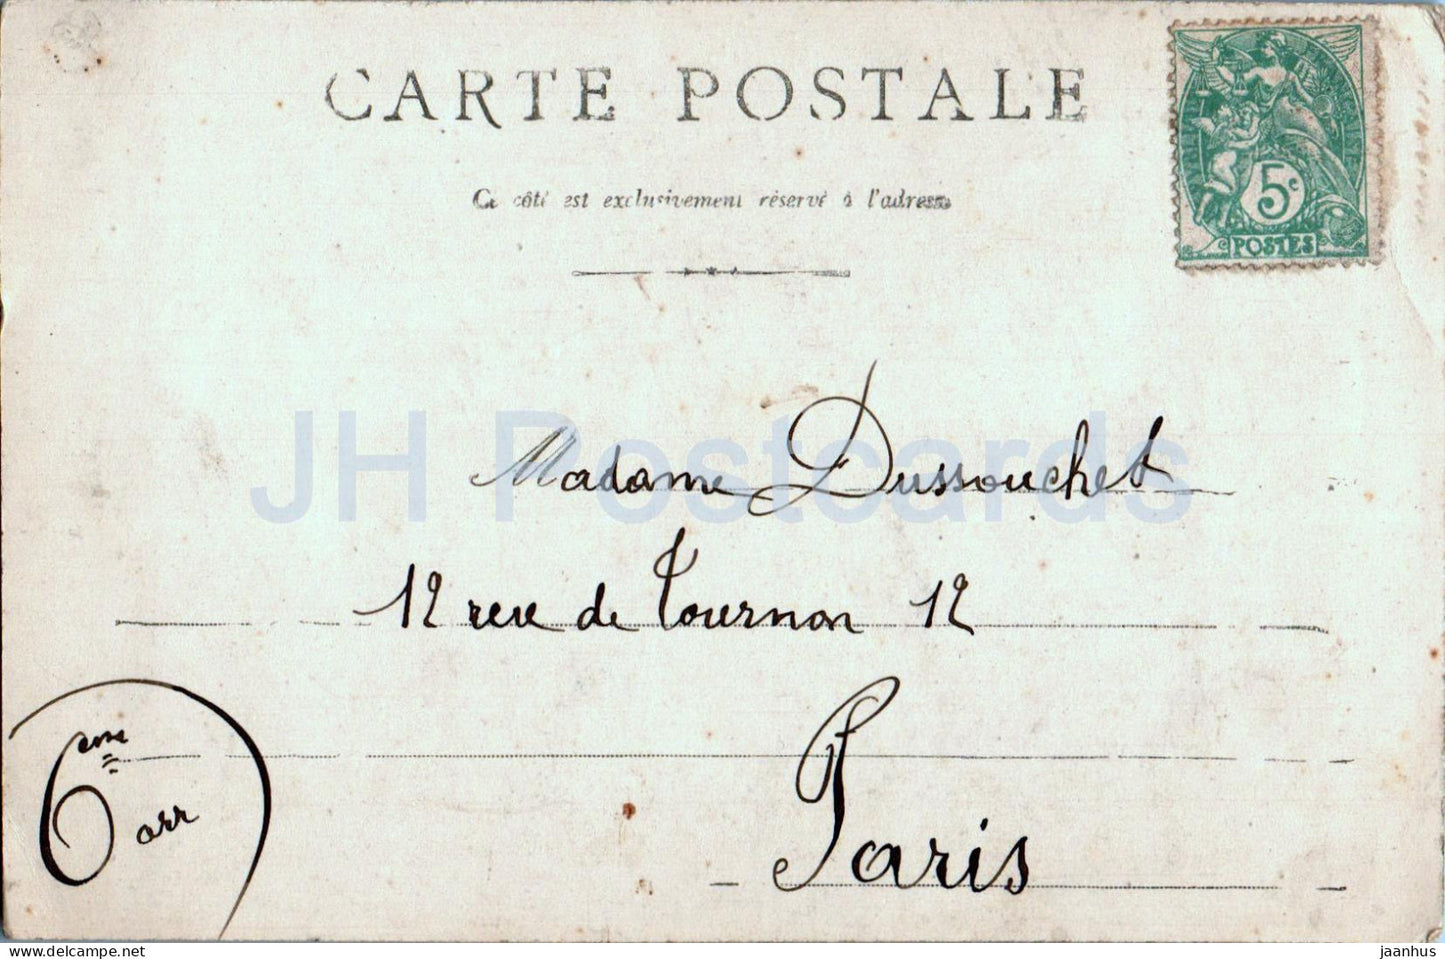 Fort Tournoux - alte Postkarte - Frankreich - gebraucht